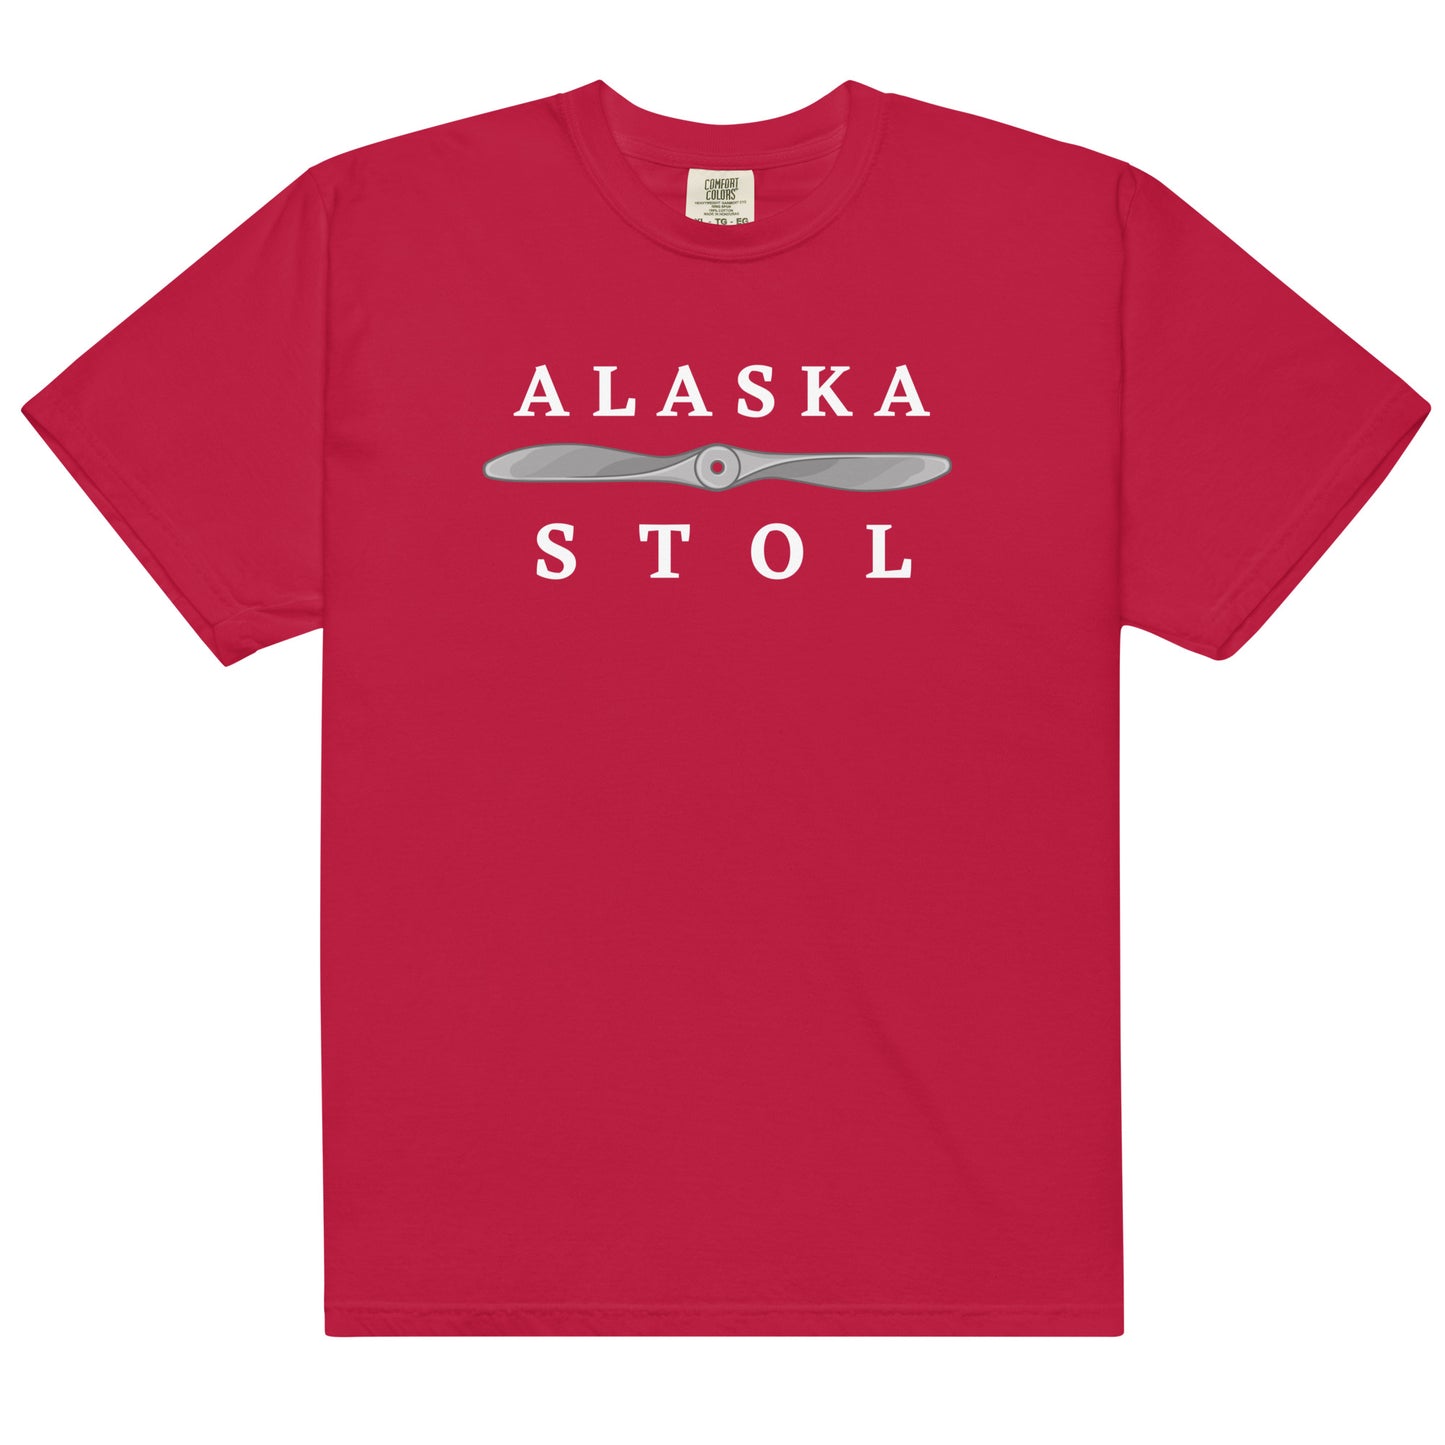 Klawock, Alaska' Men's Premium T-Shirt